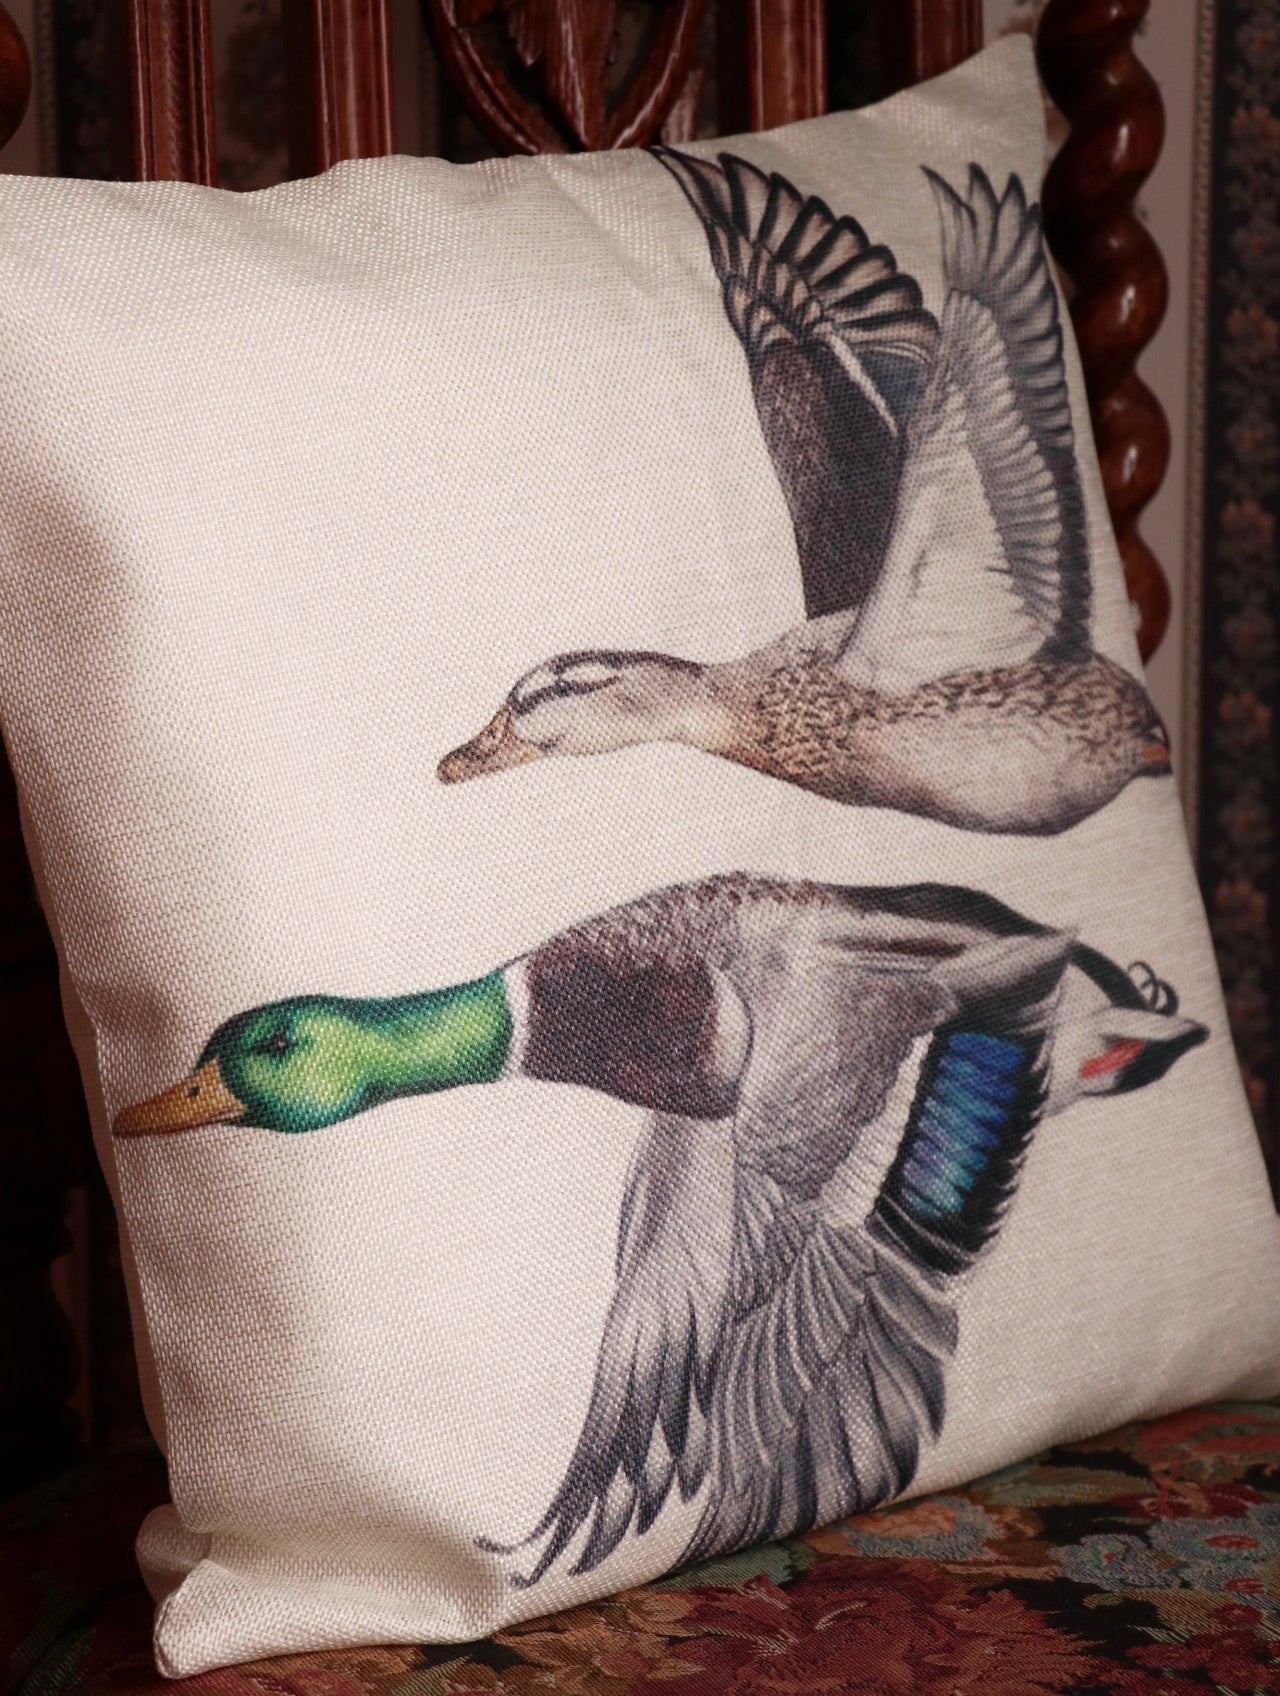 Linen Mallard Ducks Cushion